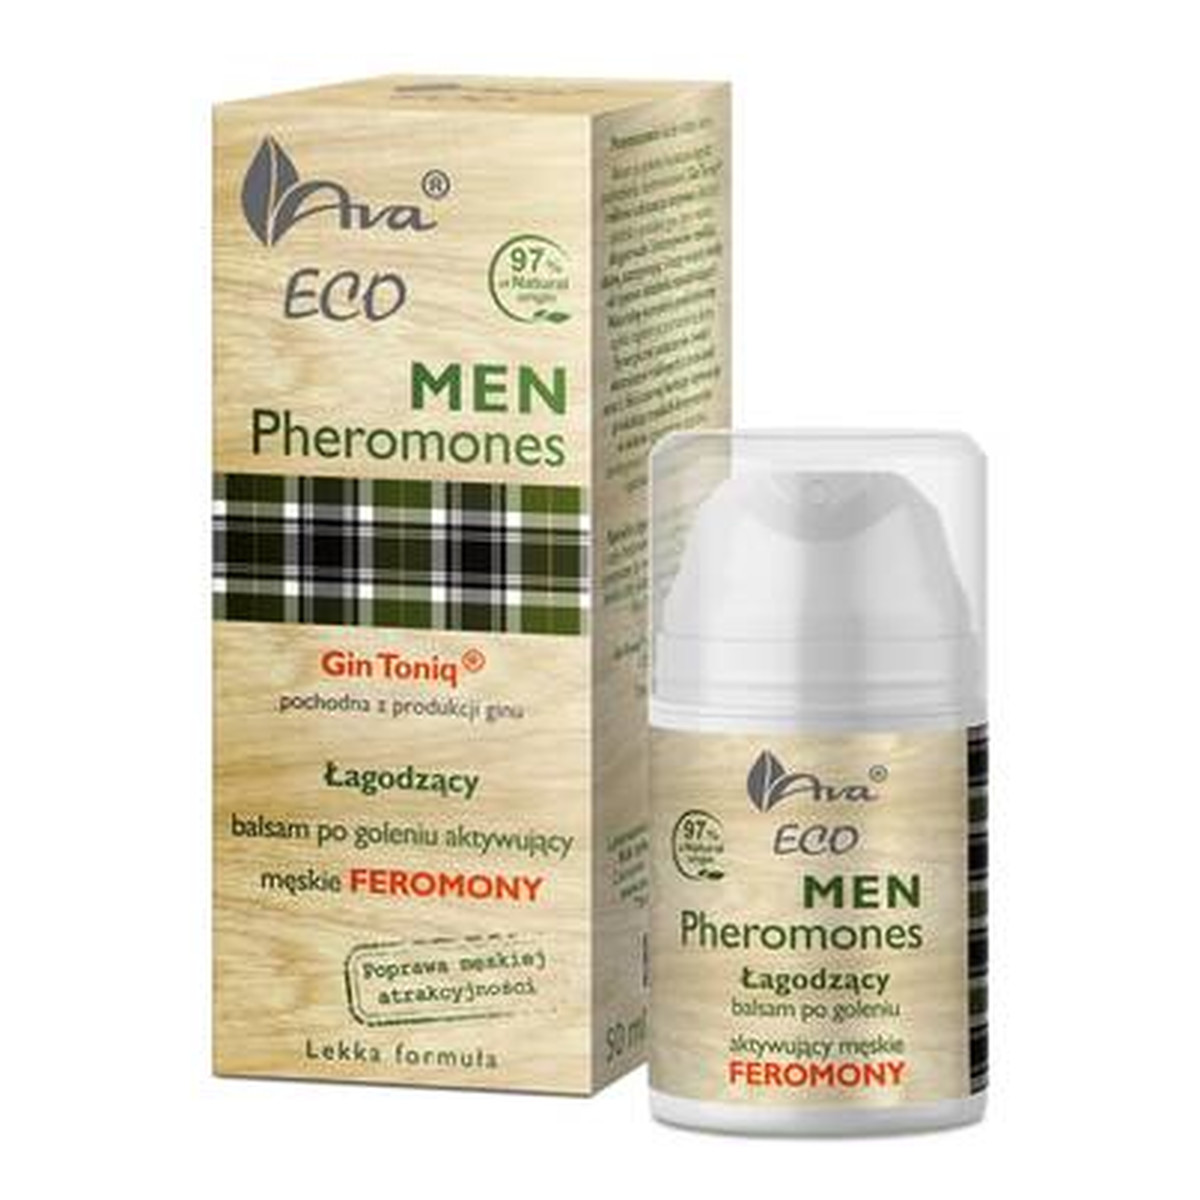 Ava Laboratorium Eco Men Pheromones łagodzący balsam po goleniu aktywujący meskie feromony 50ml